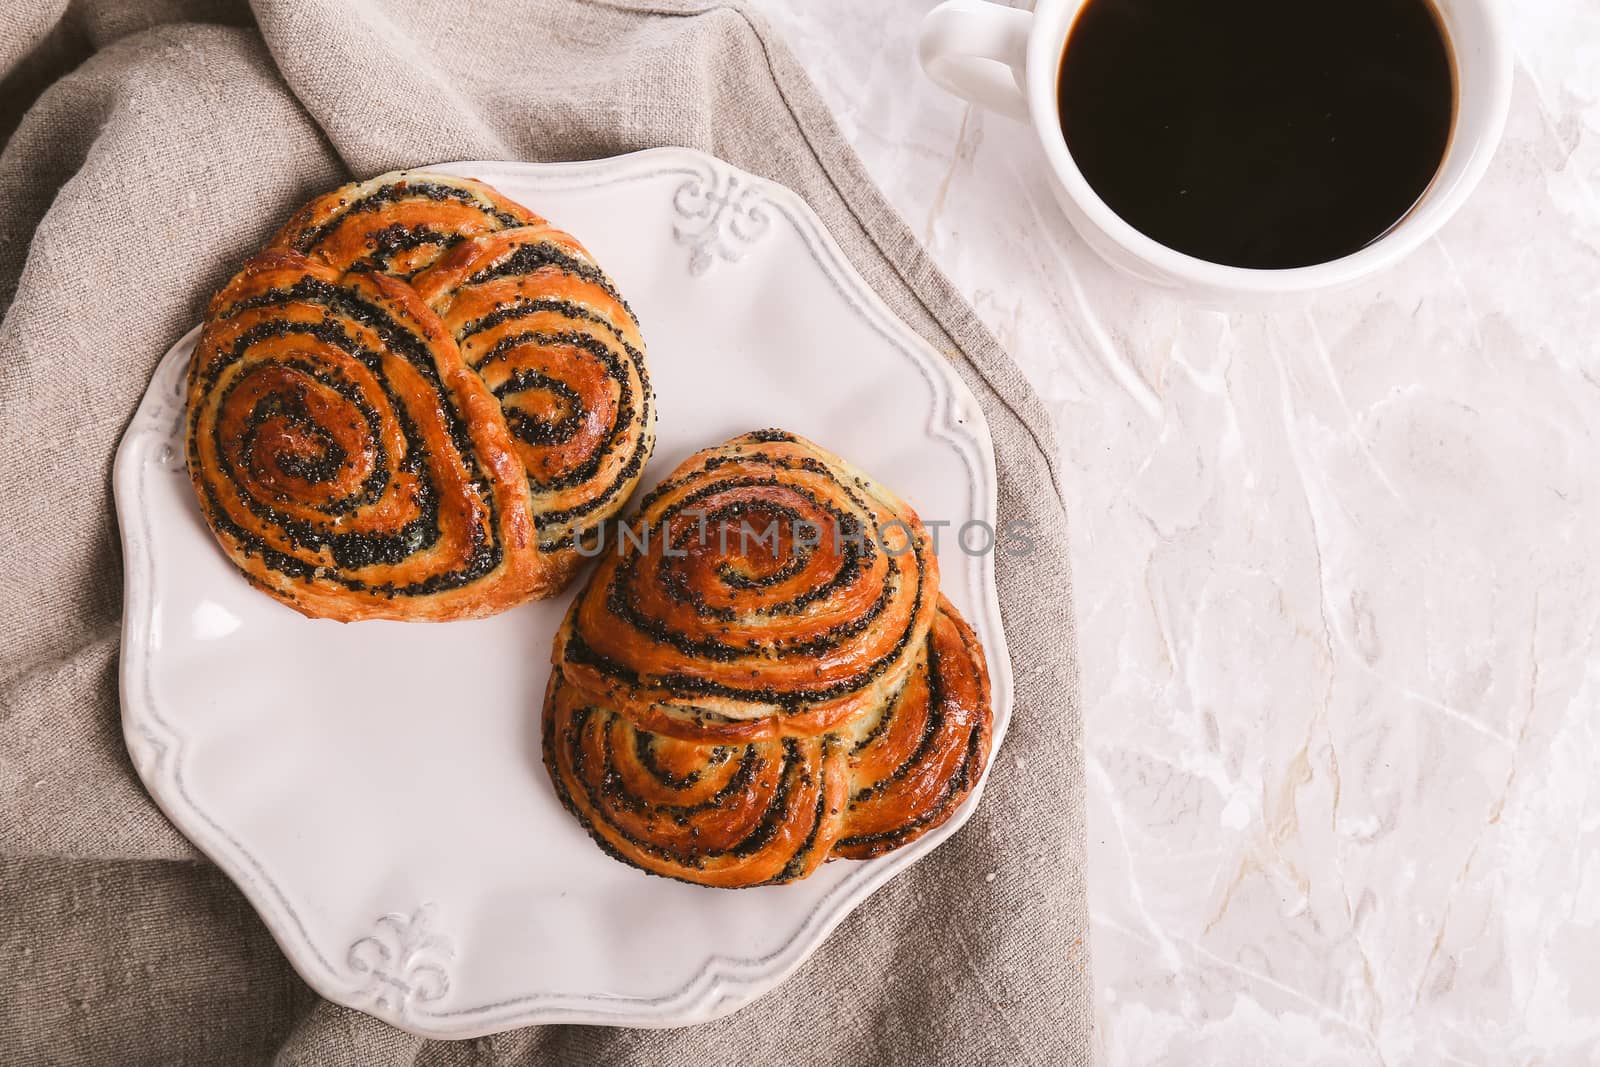 Delicious buns by rufatjumali